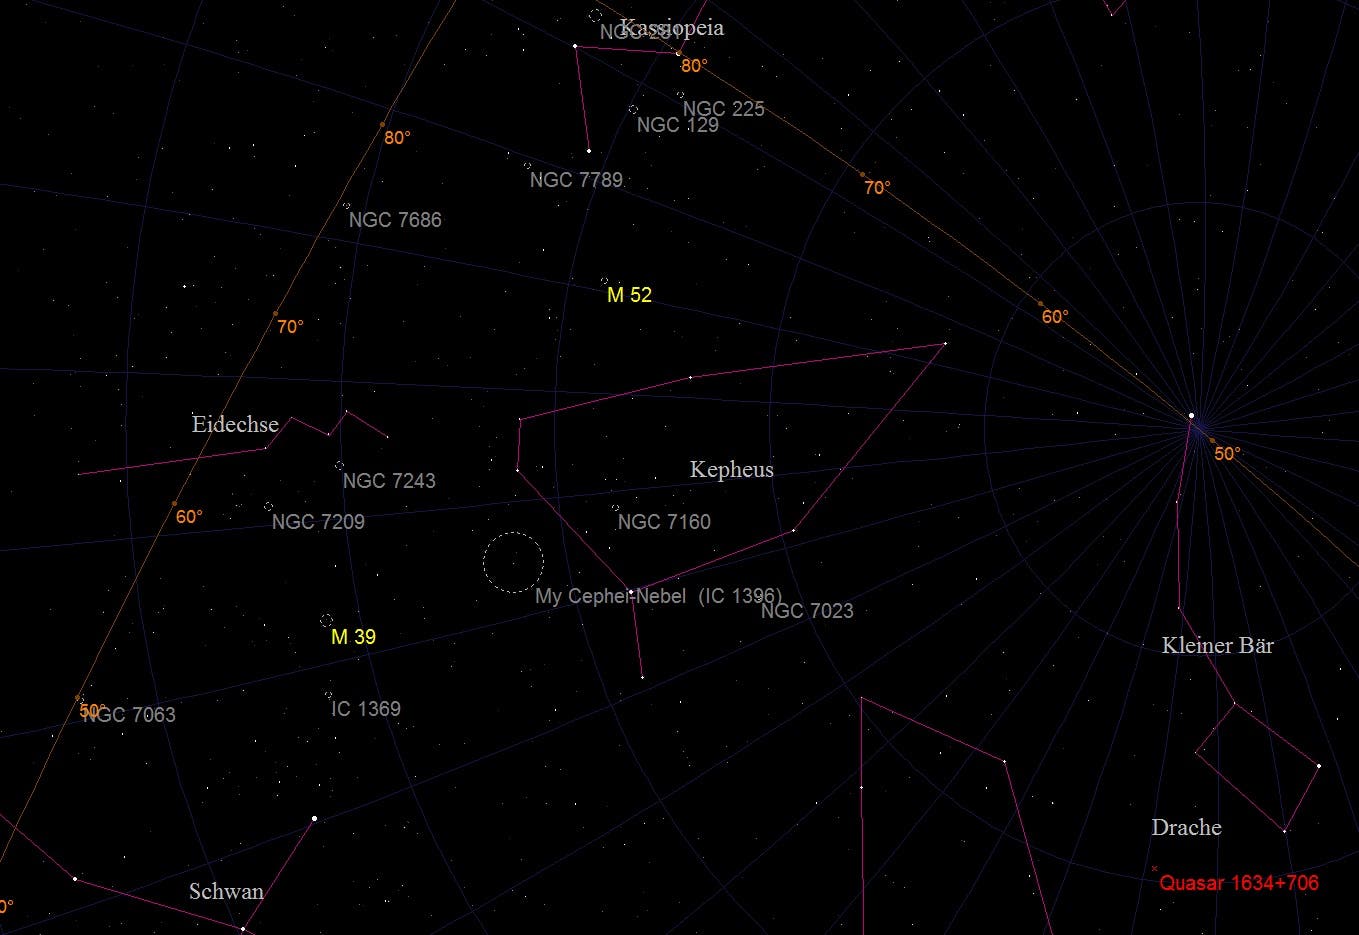 Aufsuchkarte für die offenen Sternhaufen Messier 39 und 52